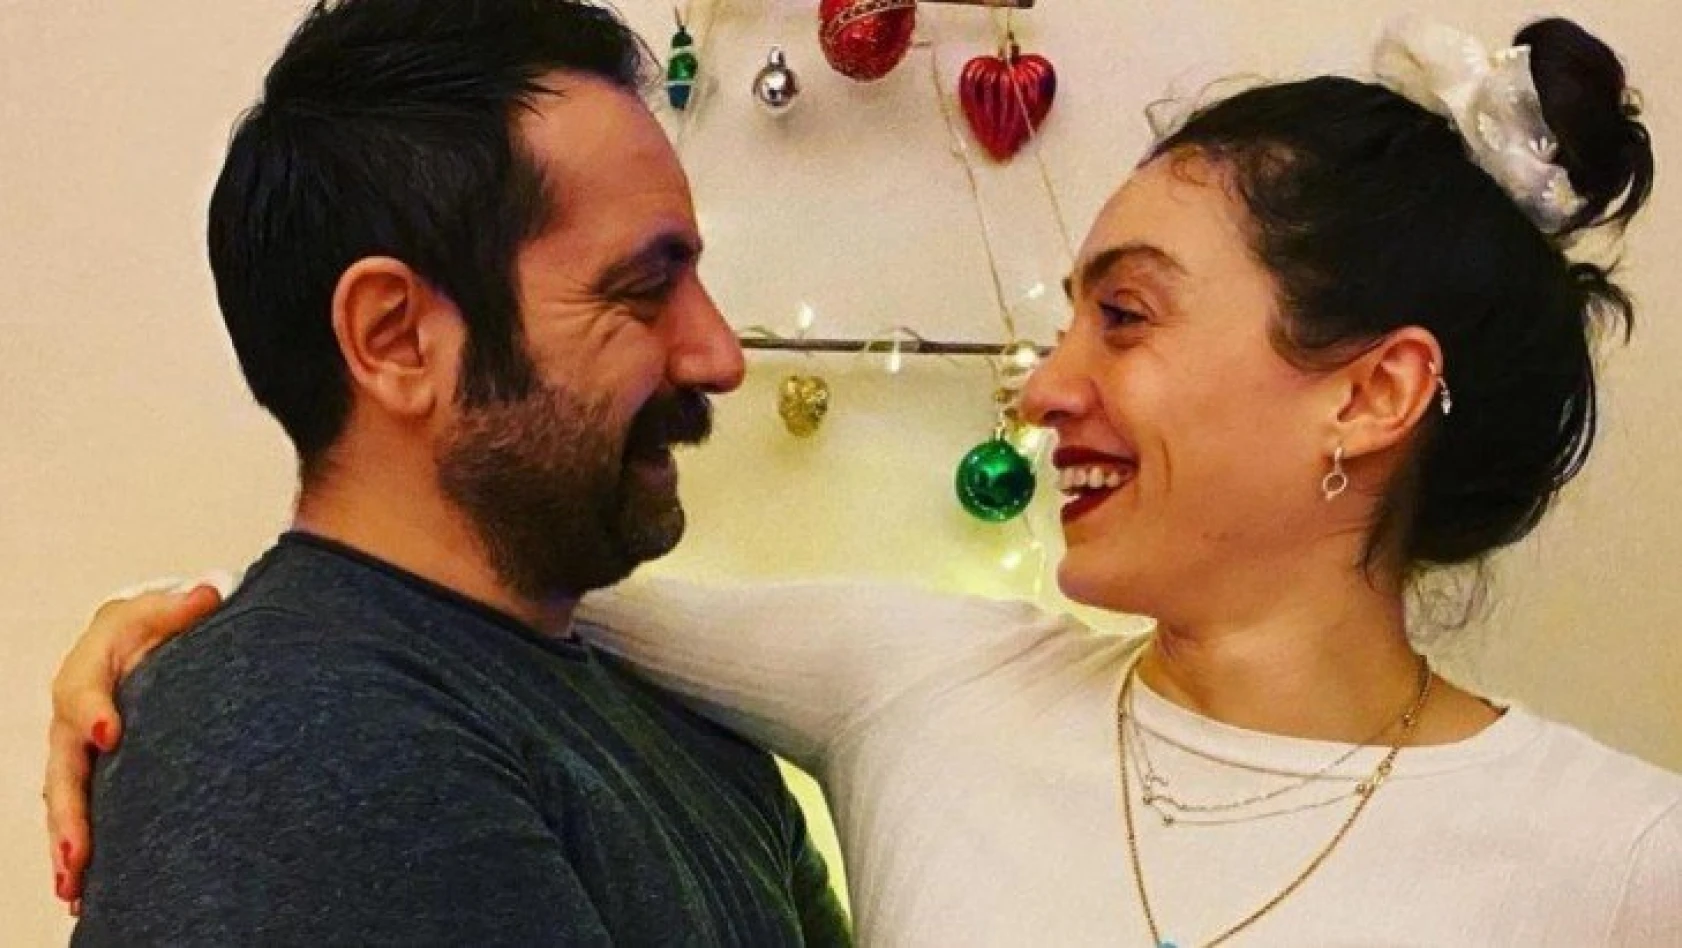 Merve Dizdar ile Gürhan Altundaşar boşanıyor